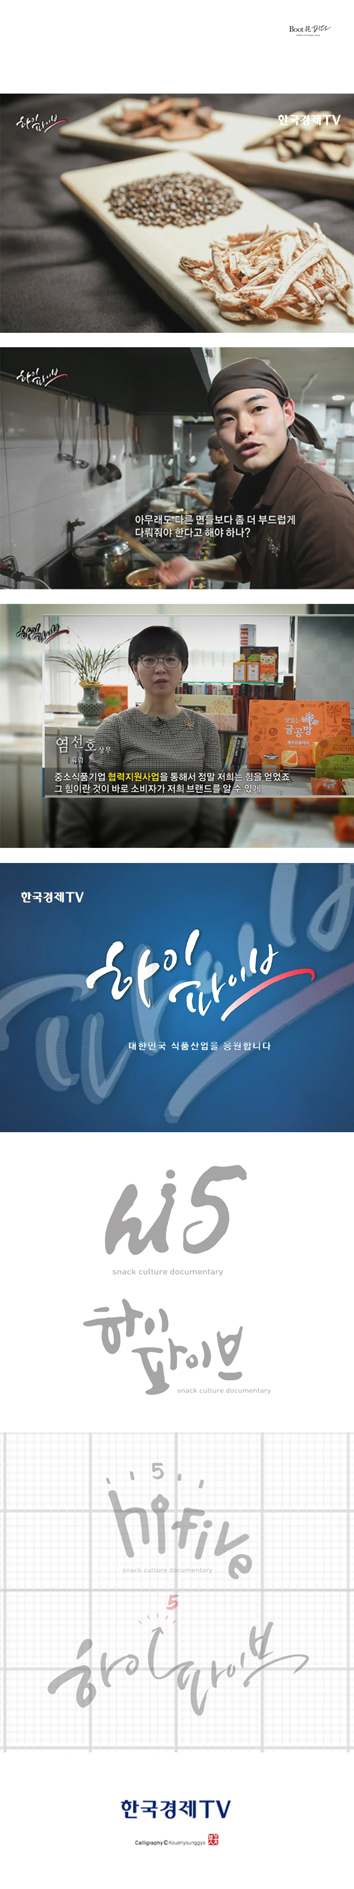 한국경제 TV 5분 다큐멘터리 하이파이브 타이틀 캘리그라피